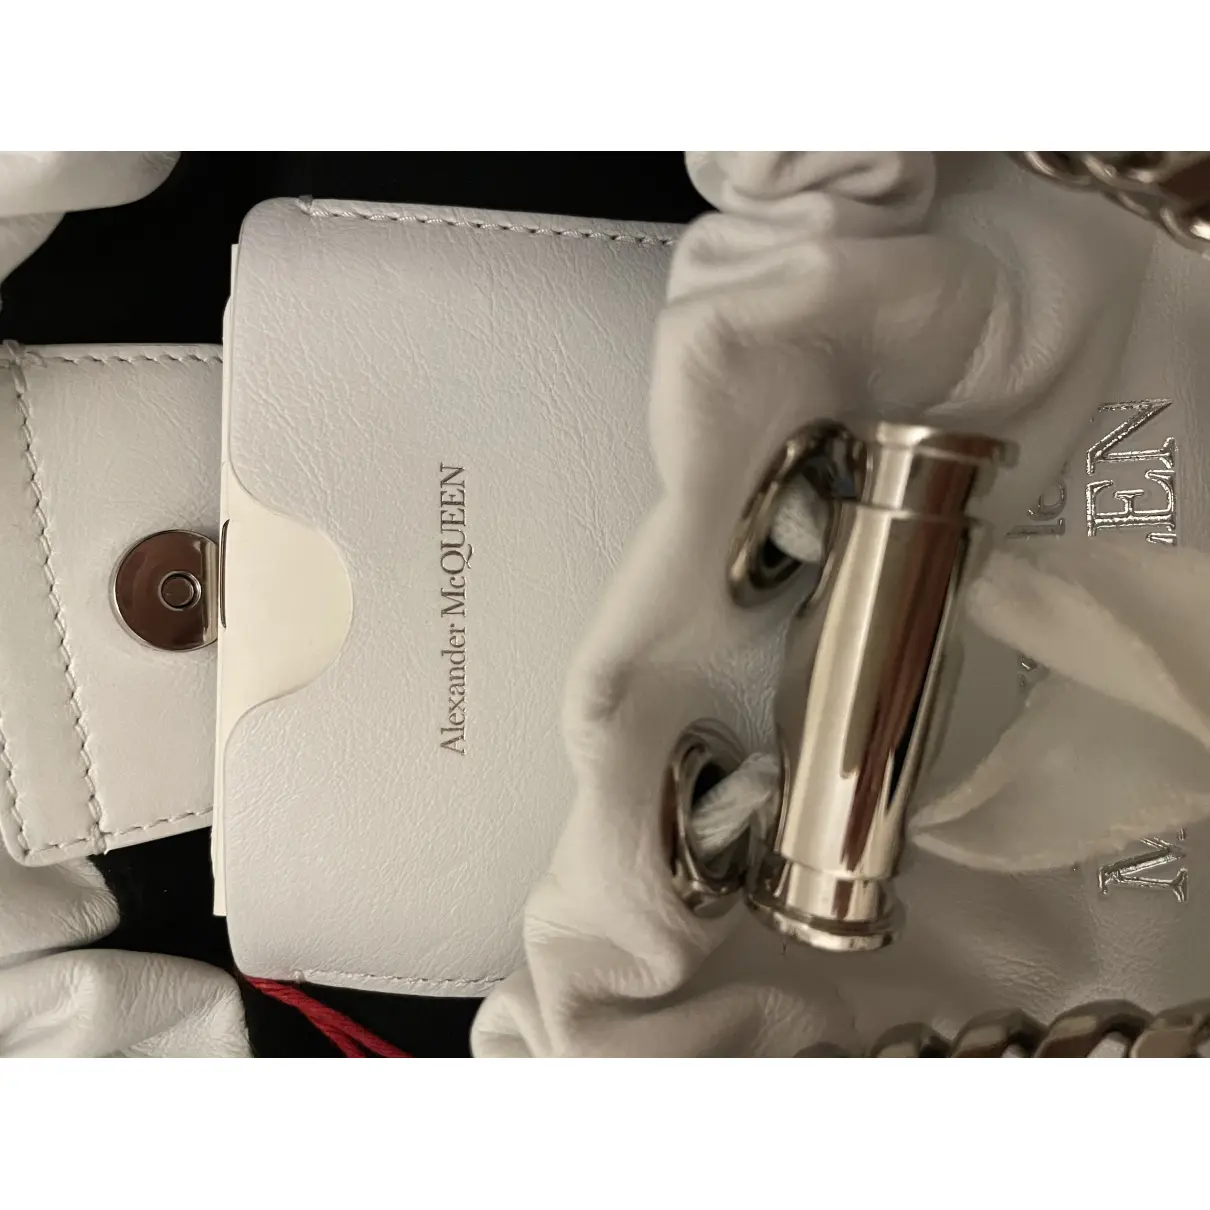 Luxury Alexander McQueen Handbags Women